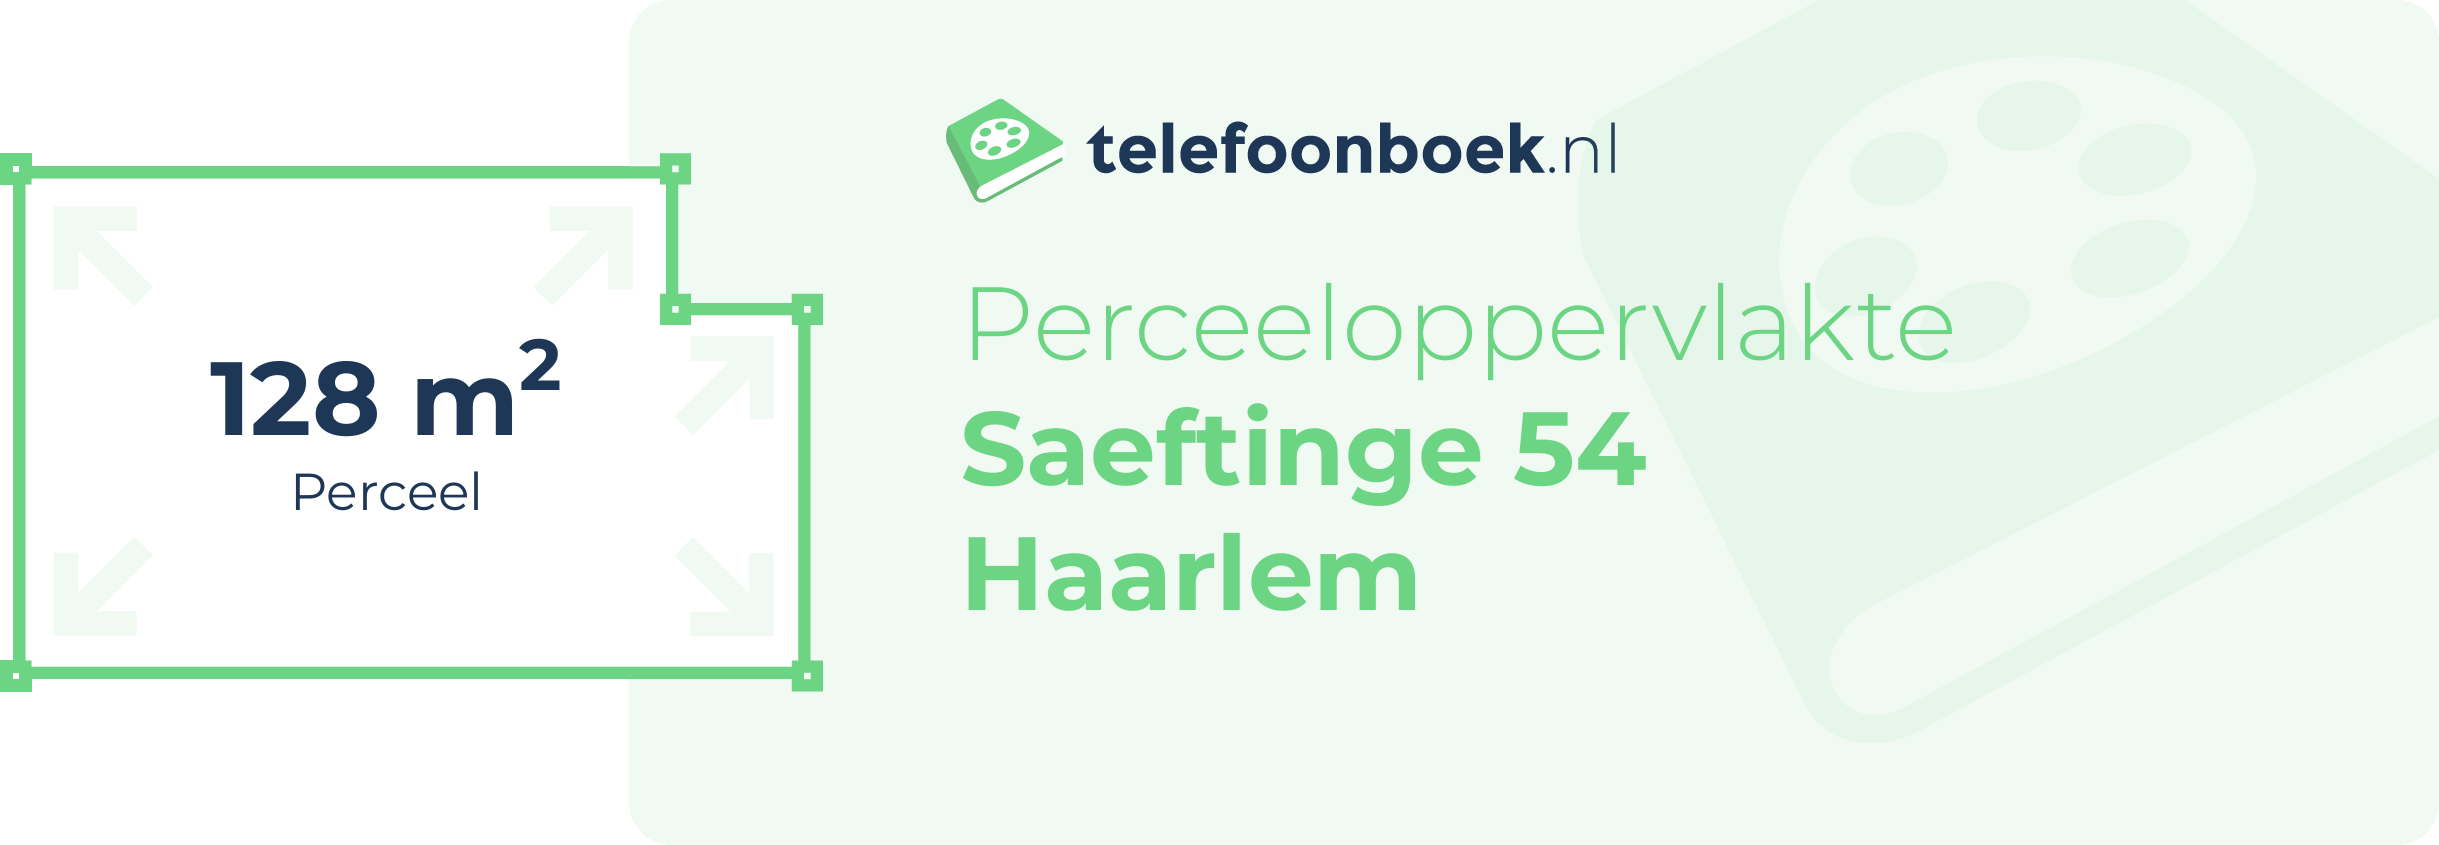 Perceeloppervlakte Saeftinge 54 Haarlem